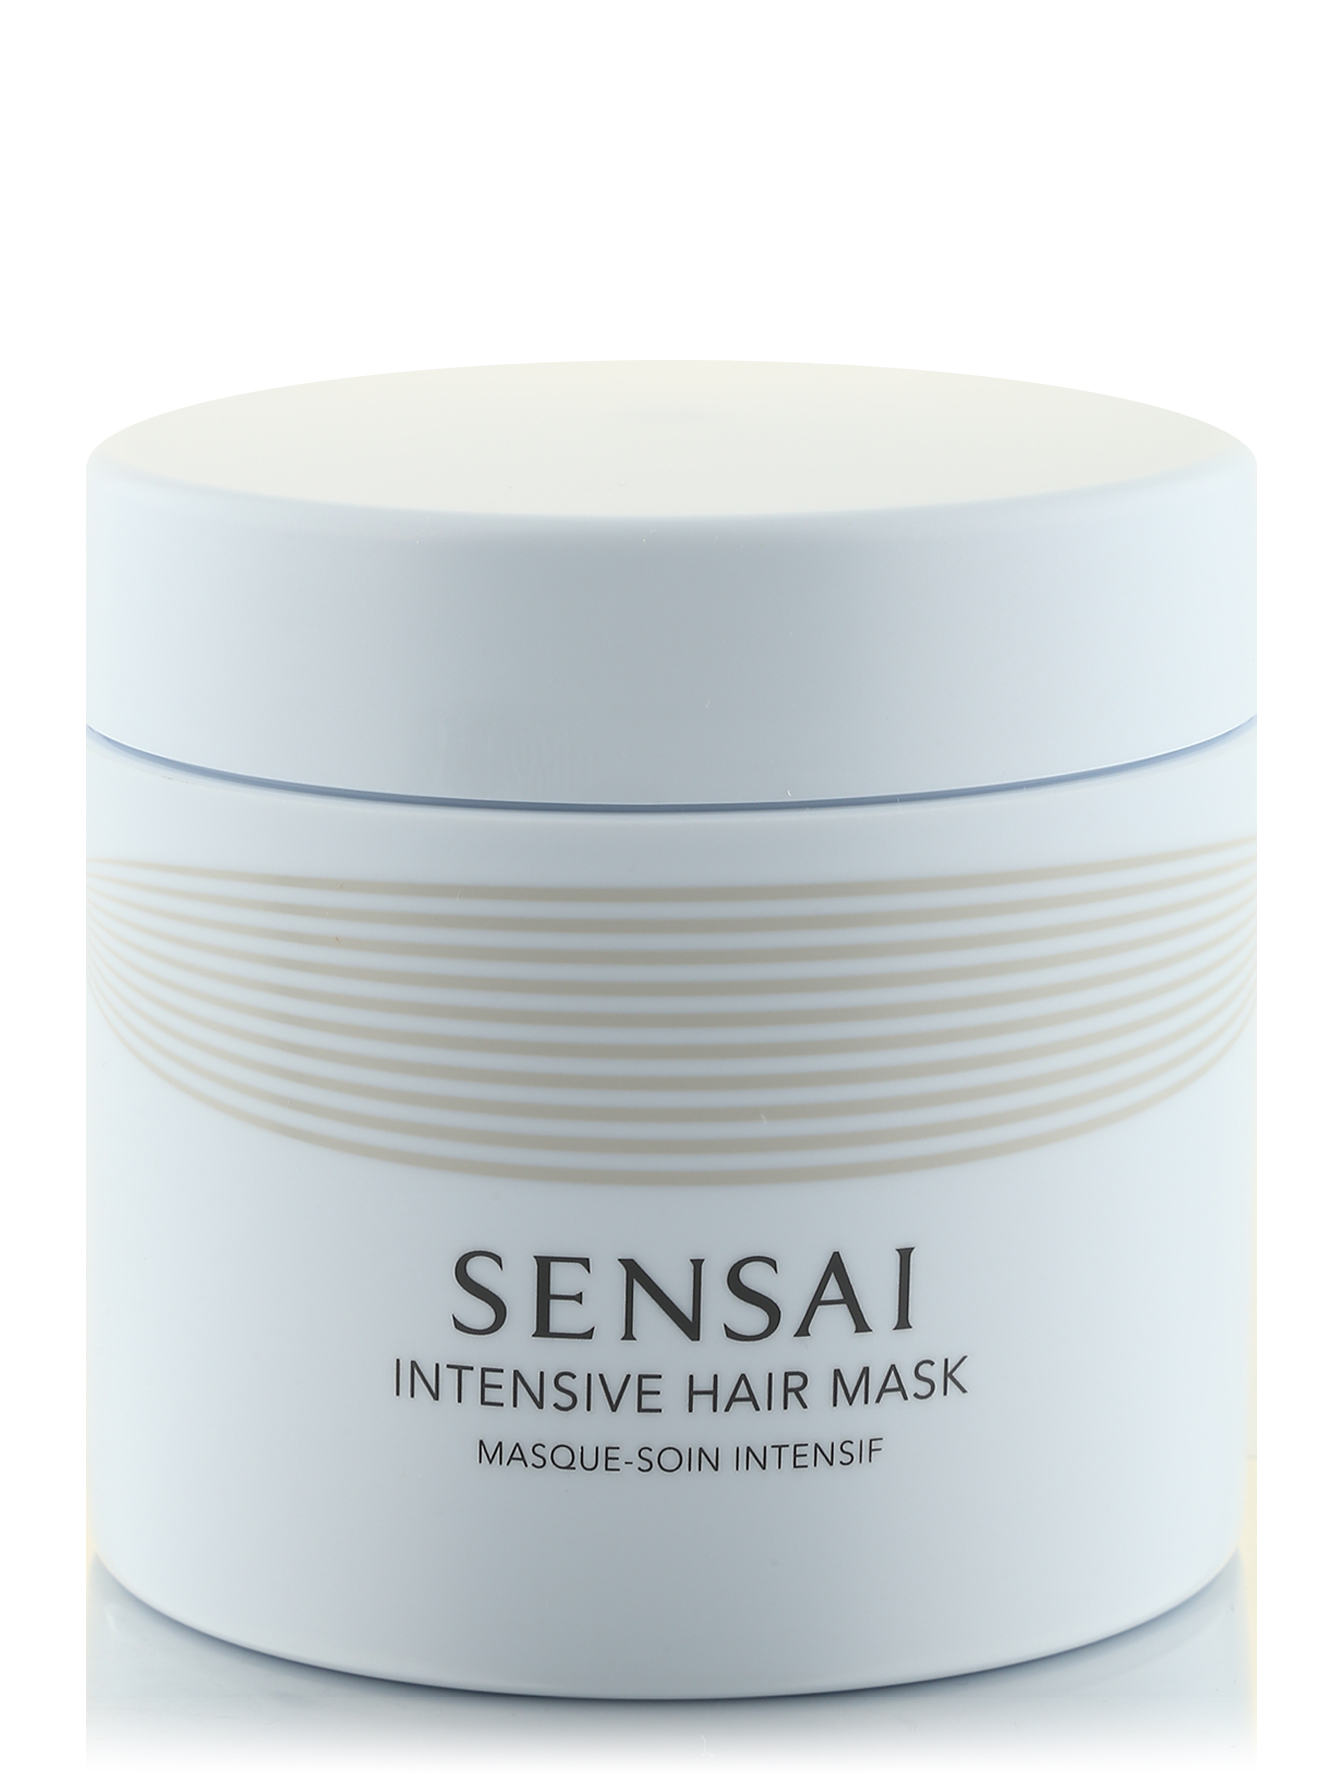  Маска интенсивного действия для волос - Sensai Hare Care Lin, 200ml - Общий вид